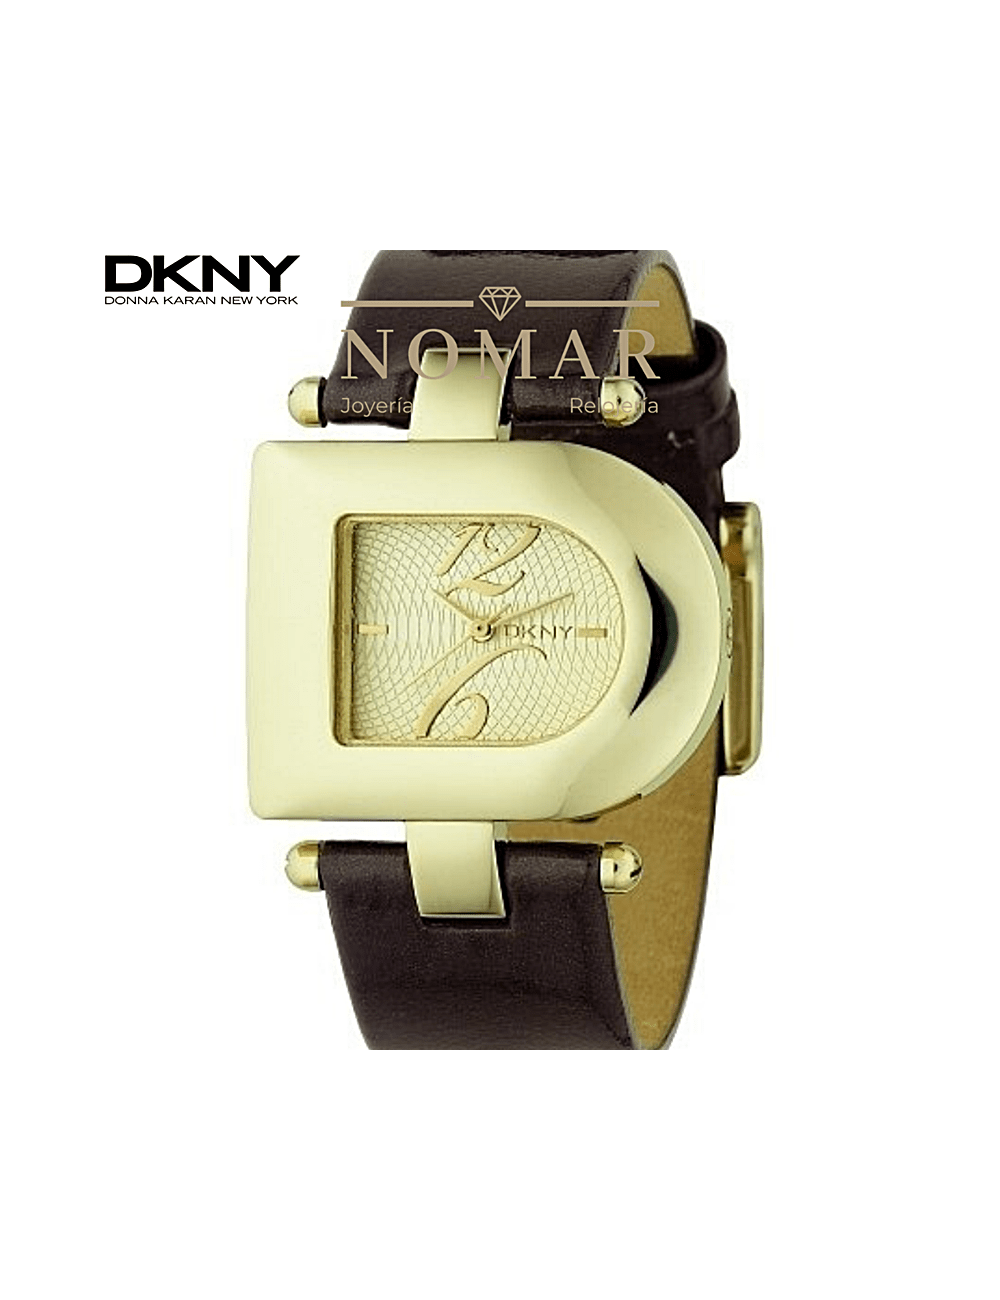 Amigo por correspondencia vaquero Pelmel Reloj DKNY de mujer analógico acero dorado y piel marrón